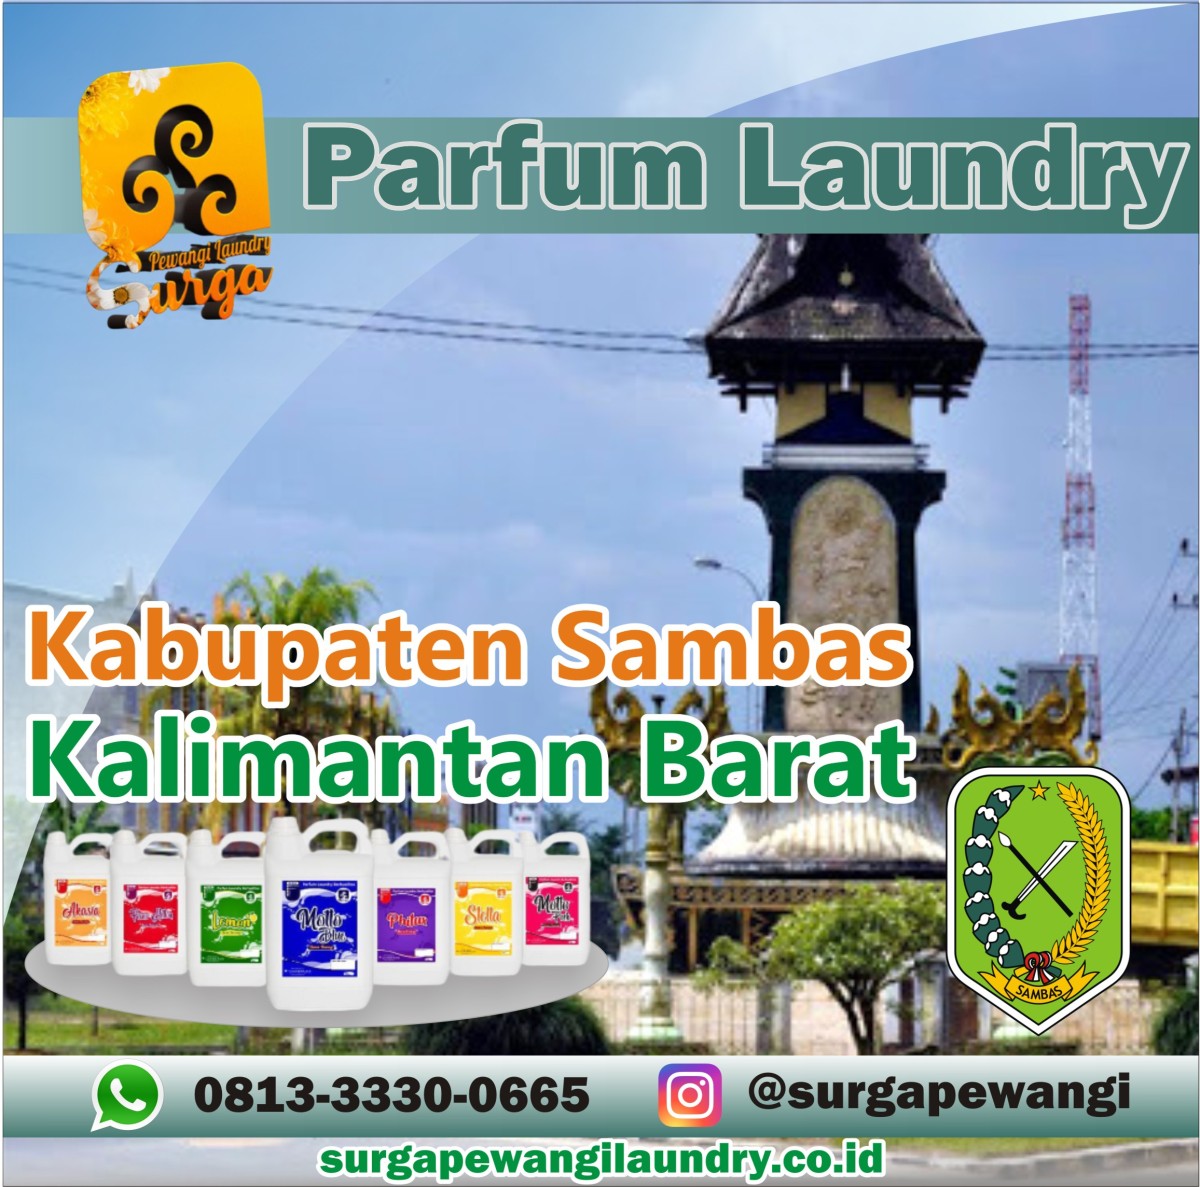 Parfum Laundry Kabupaten Sambas, Kalimantan Barat